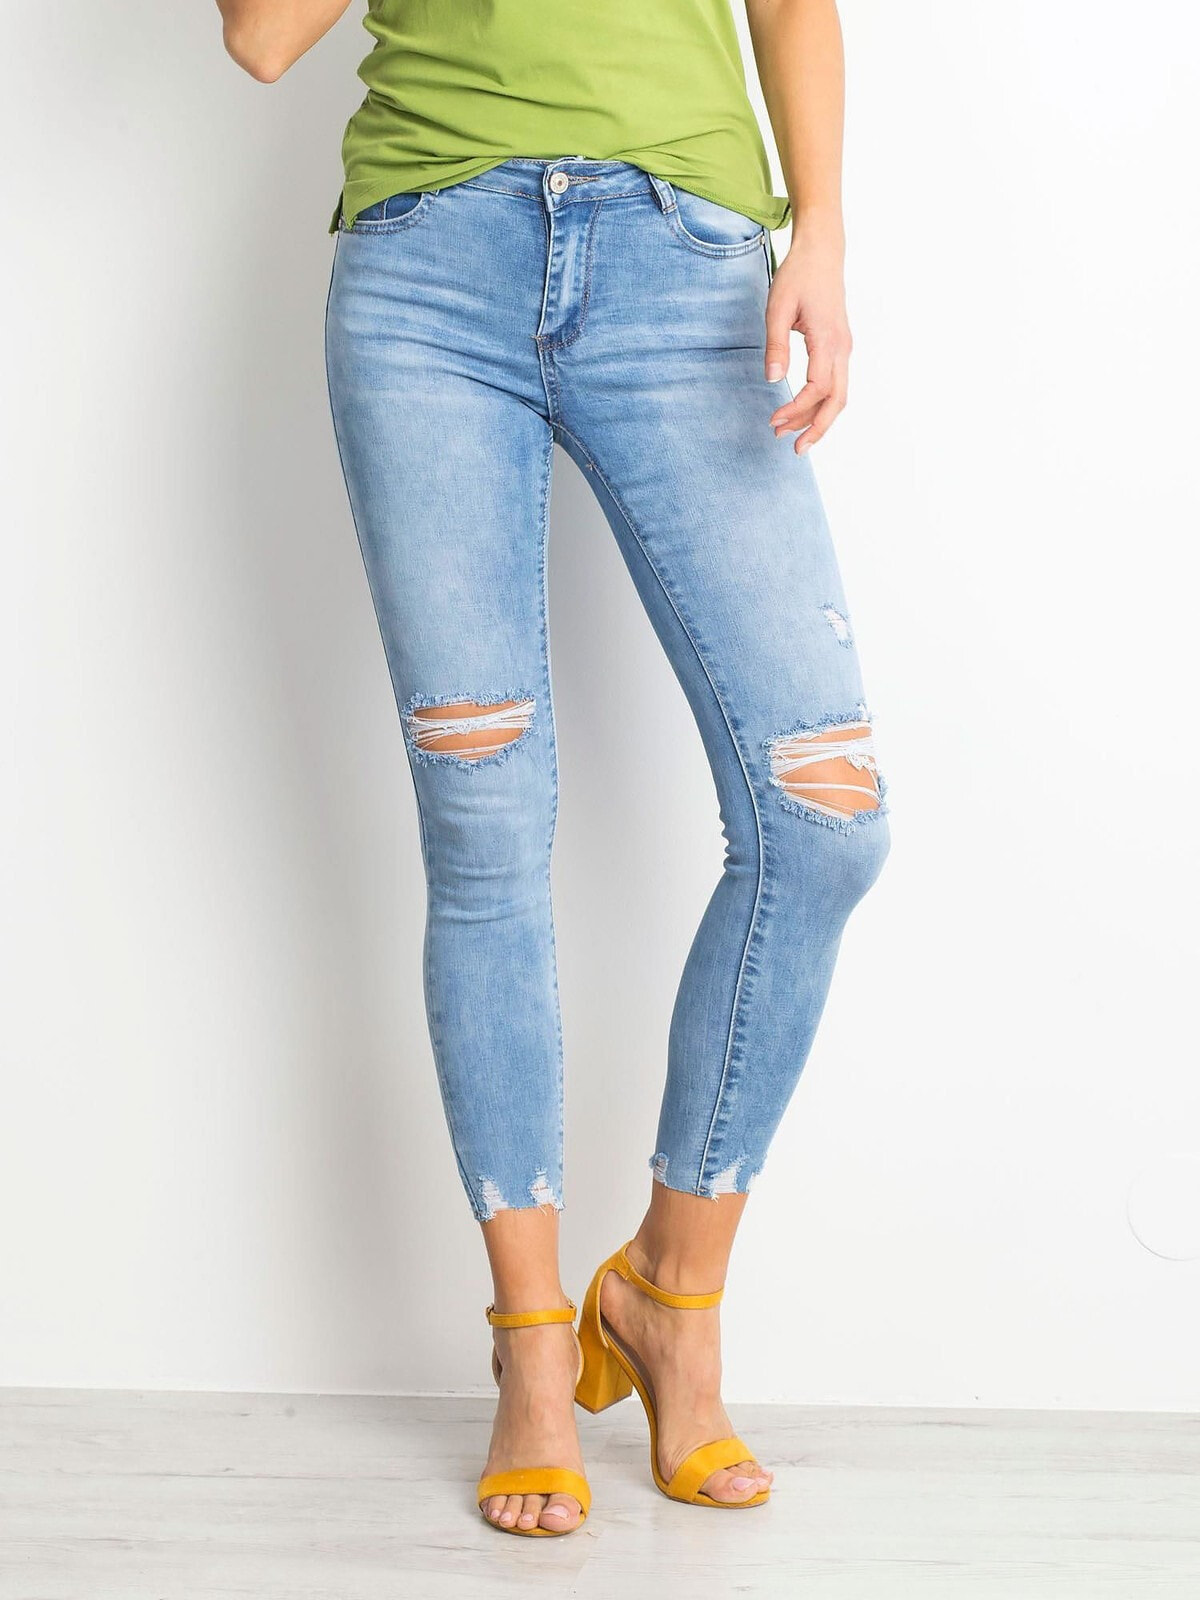 Женские джинсы  скинни со средней посадкой укороченные рваные голубые Factory Price